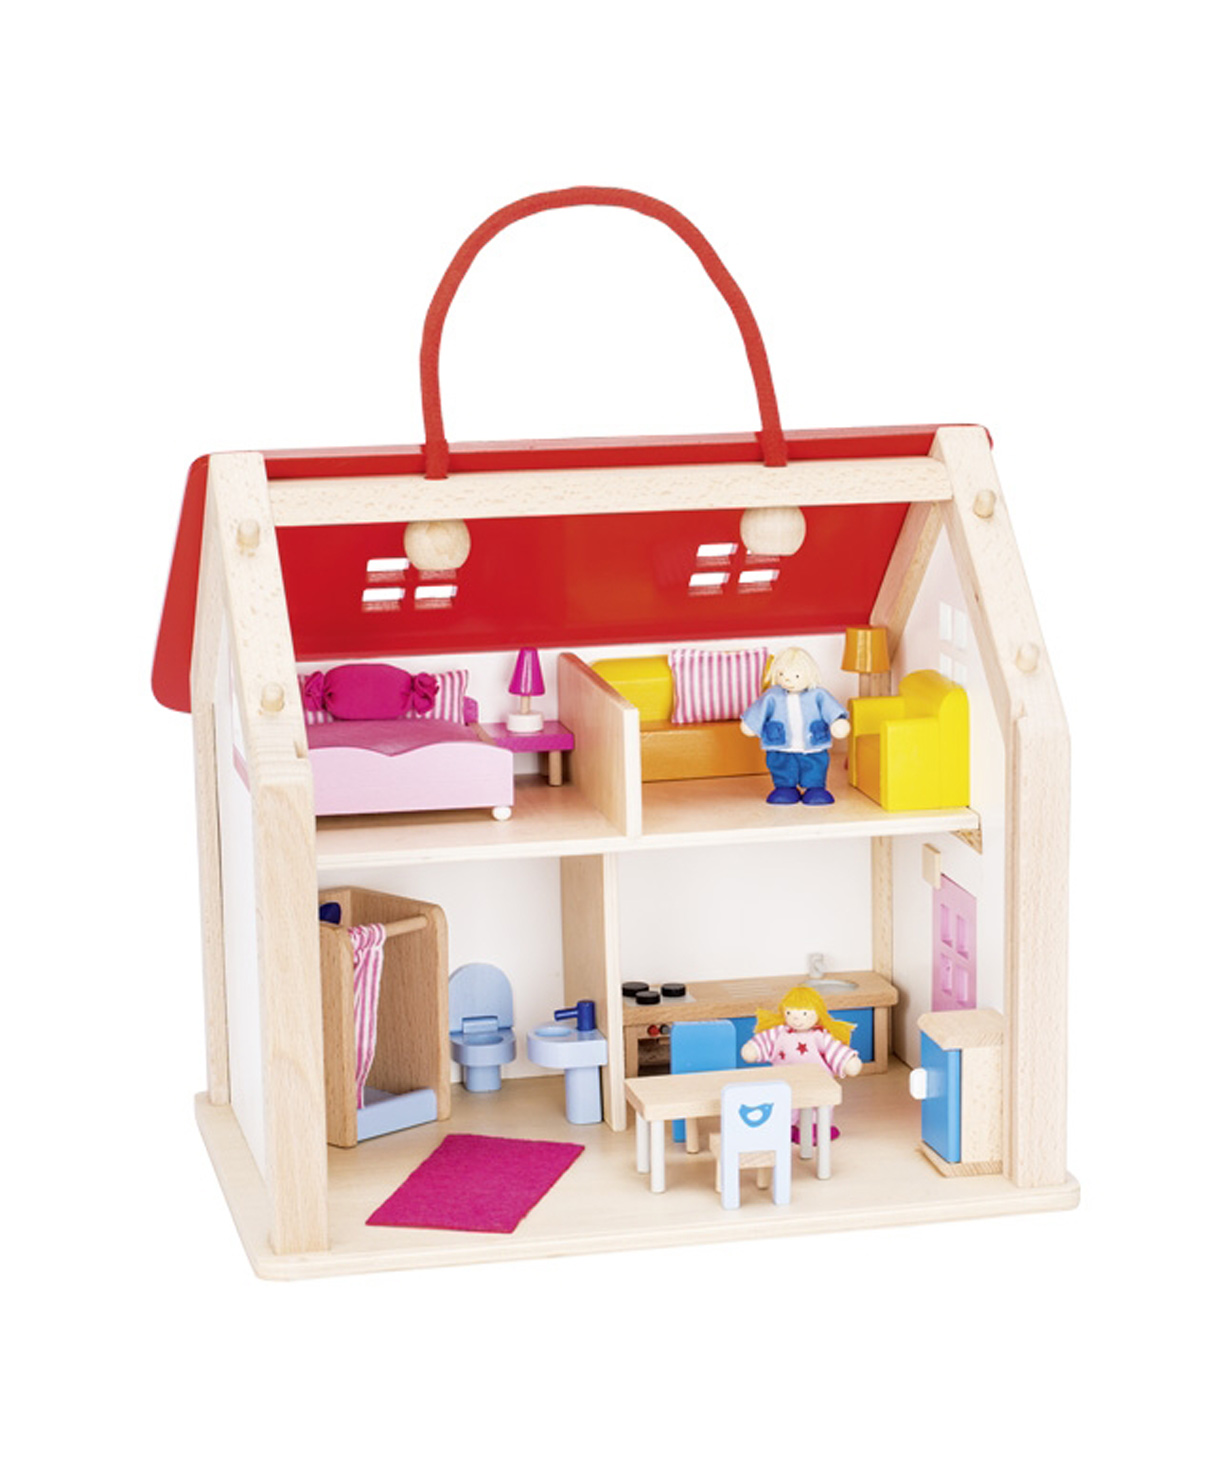 Խաղալիք «Goki Toys» ճամպրուկ տիկնիկների տուն աքսեսուարներով